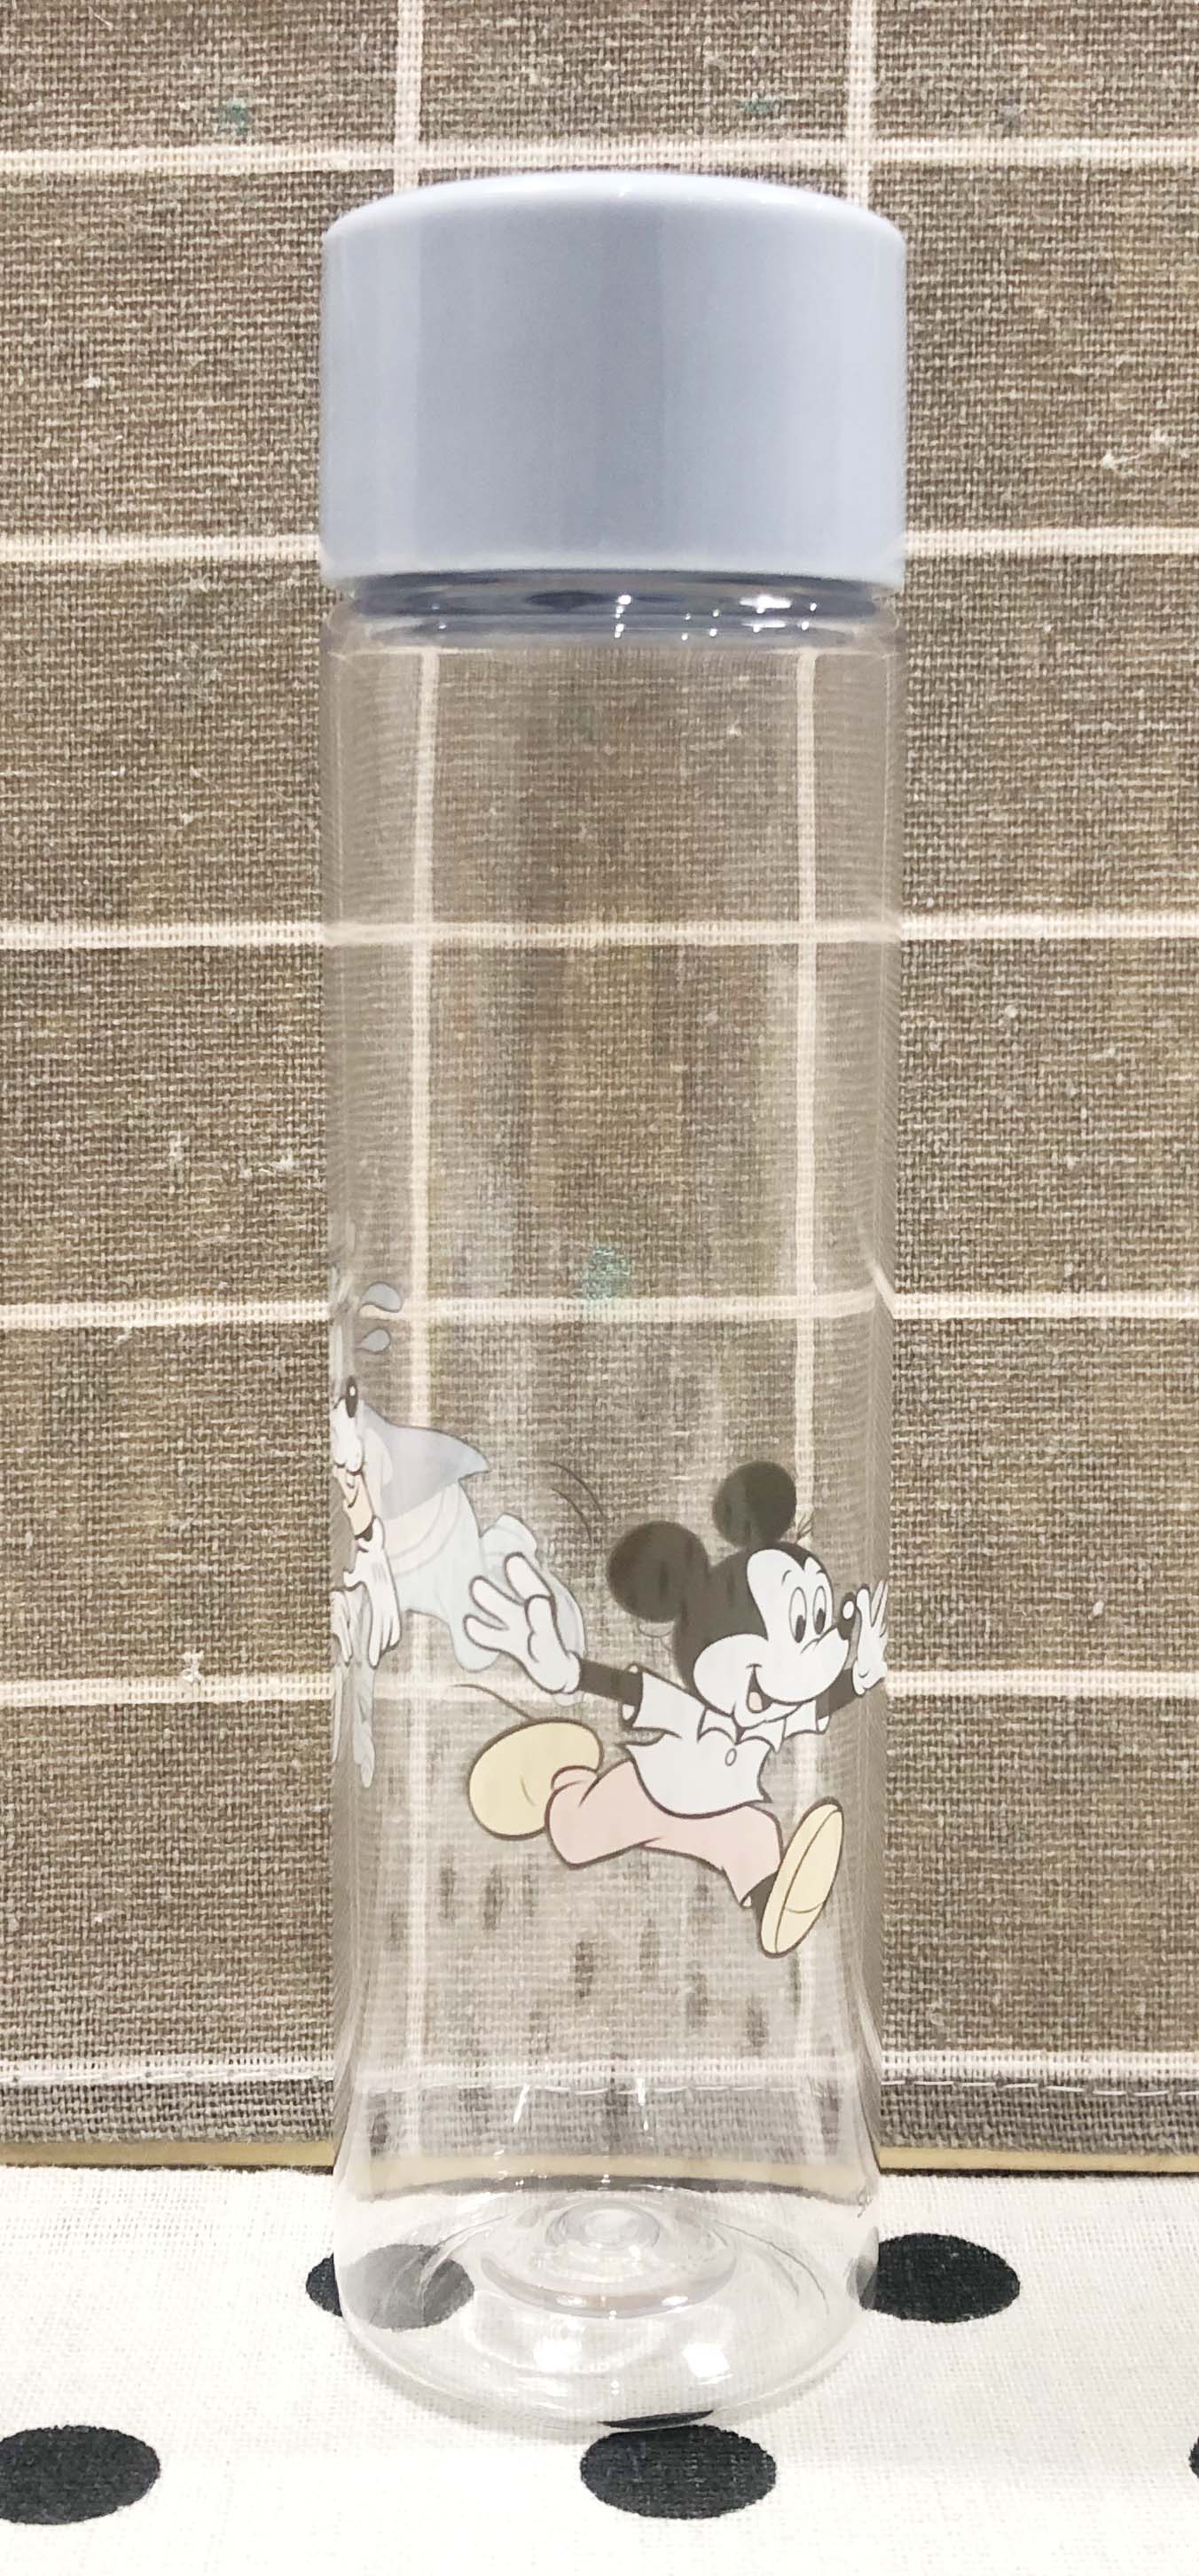 【震撼精品百貨】Micky Mouse_米奇/米妮~日本DISNEY迪士尼米奇迷你透明水壺200ml*54916